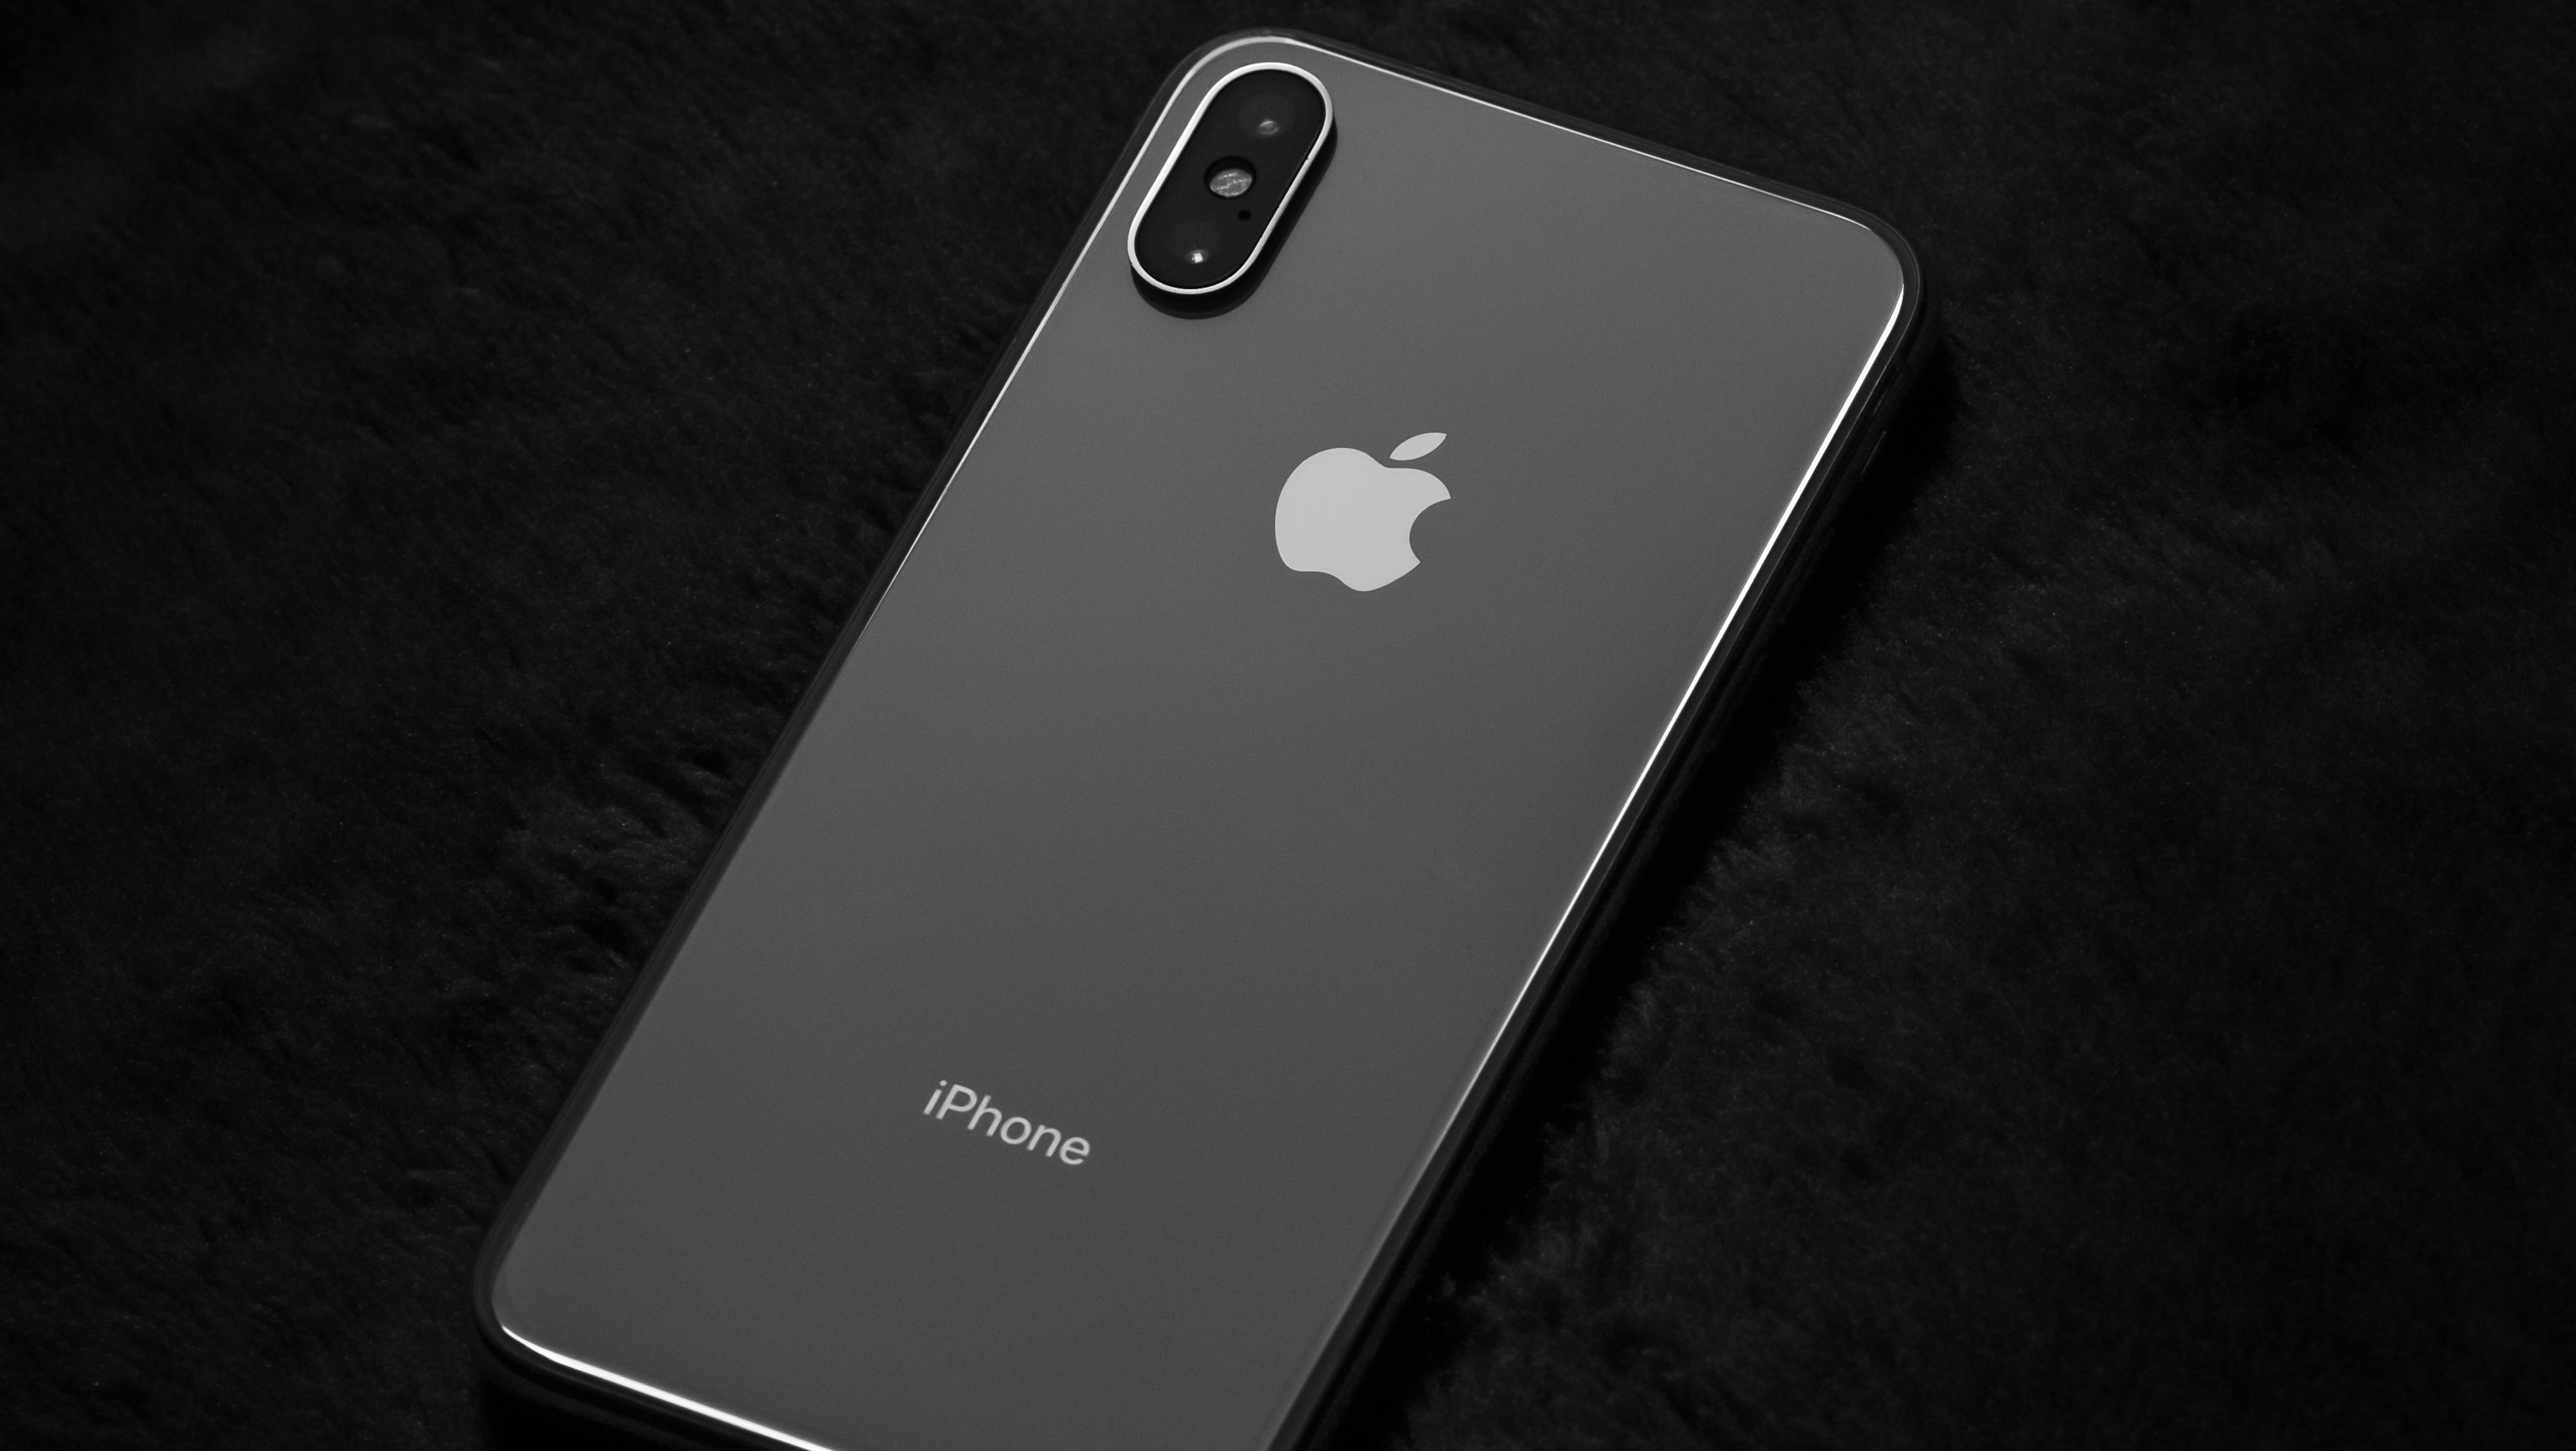 O iPhone Xs foi um dos aparelhos a sofrer com as medidas restritivas da Apple em relação a reparos (Imagem: Omid Armin/Unsplash)